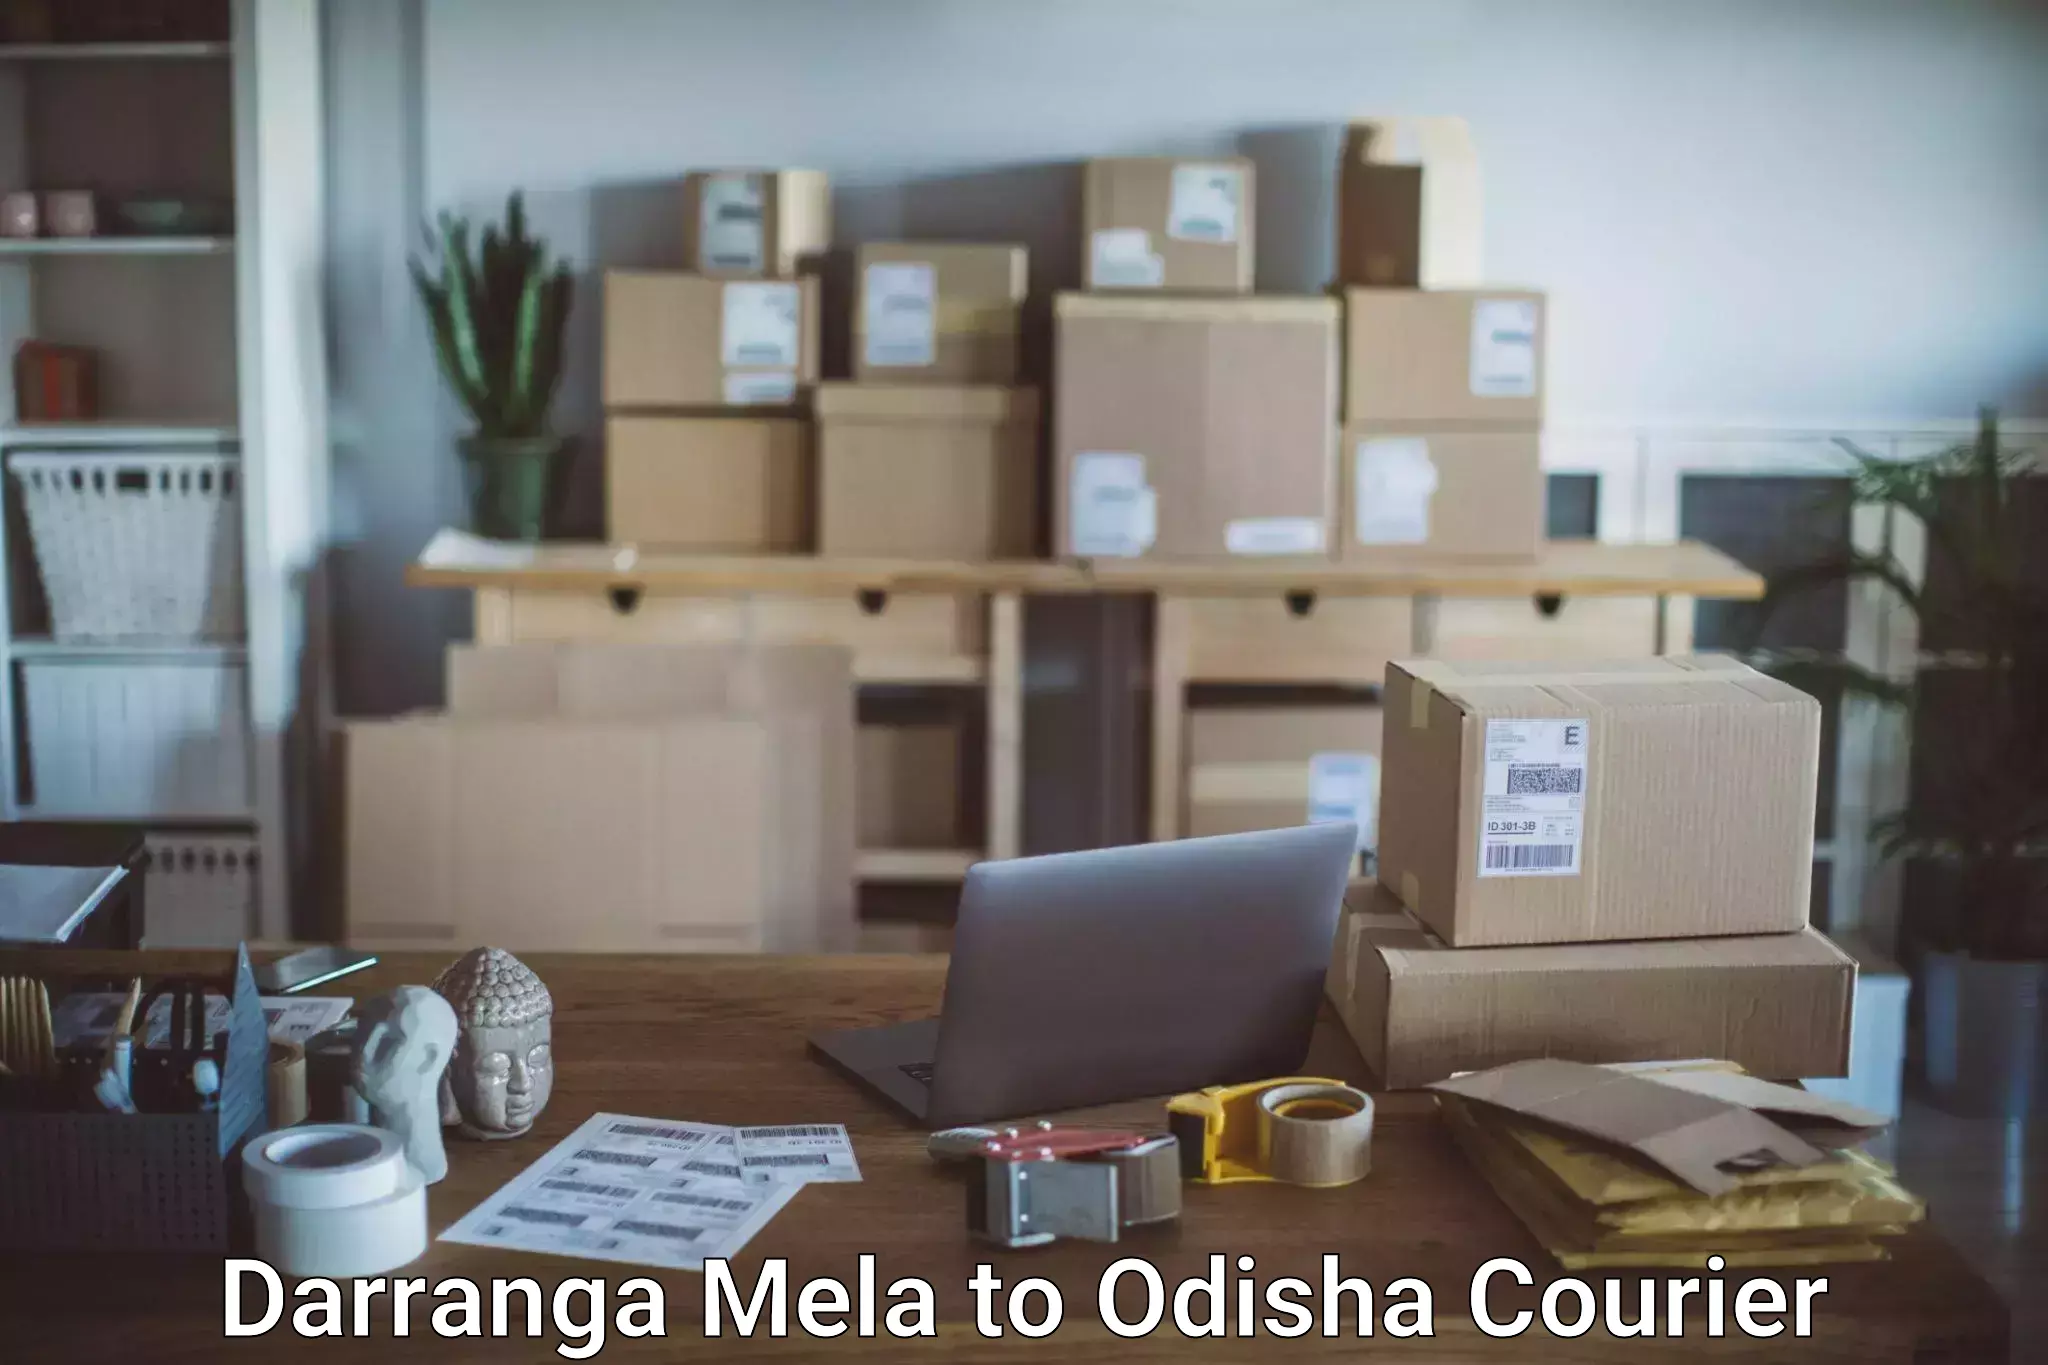 Luggage shipment tracking Darranga Mela to Melchhamunda